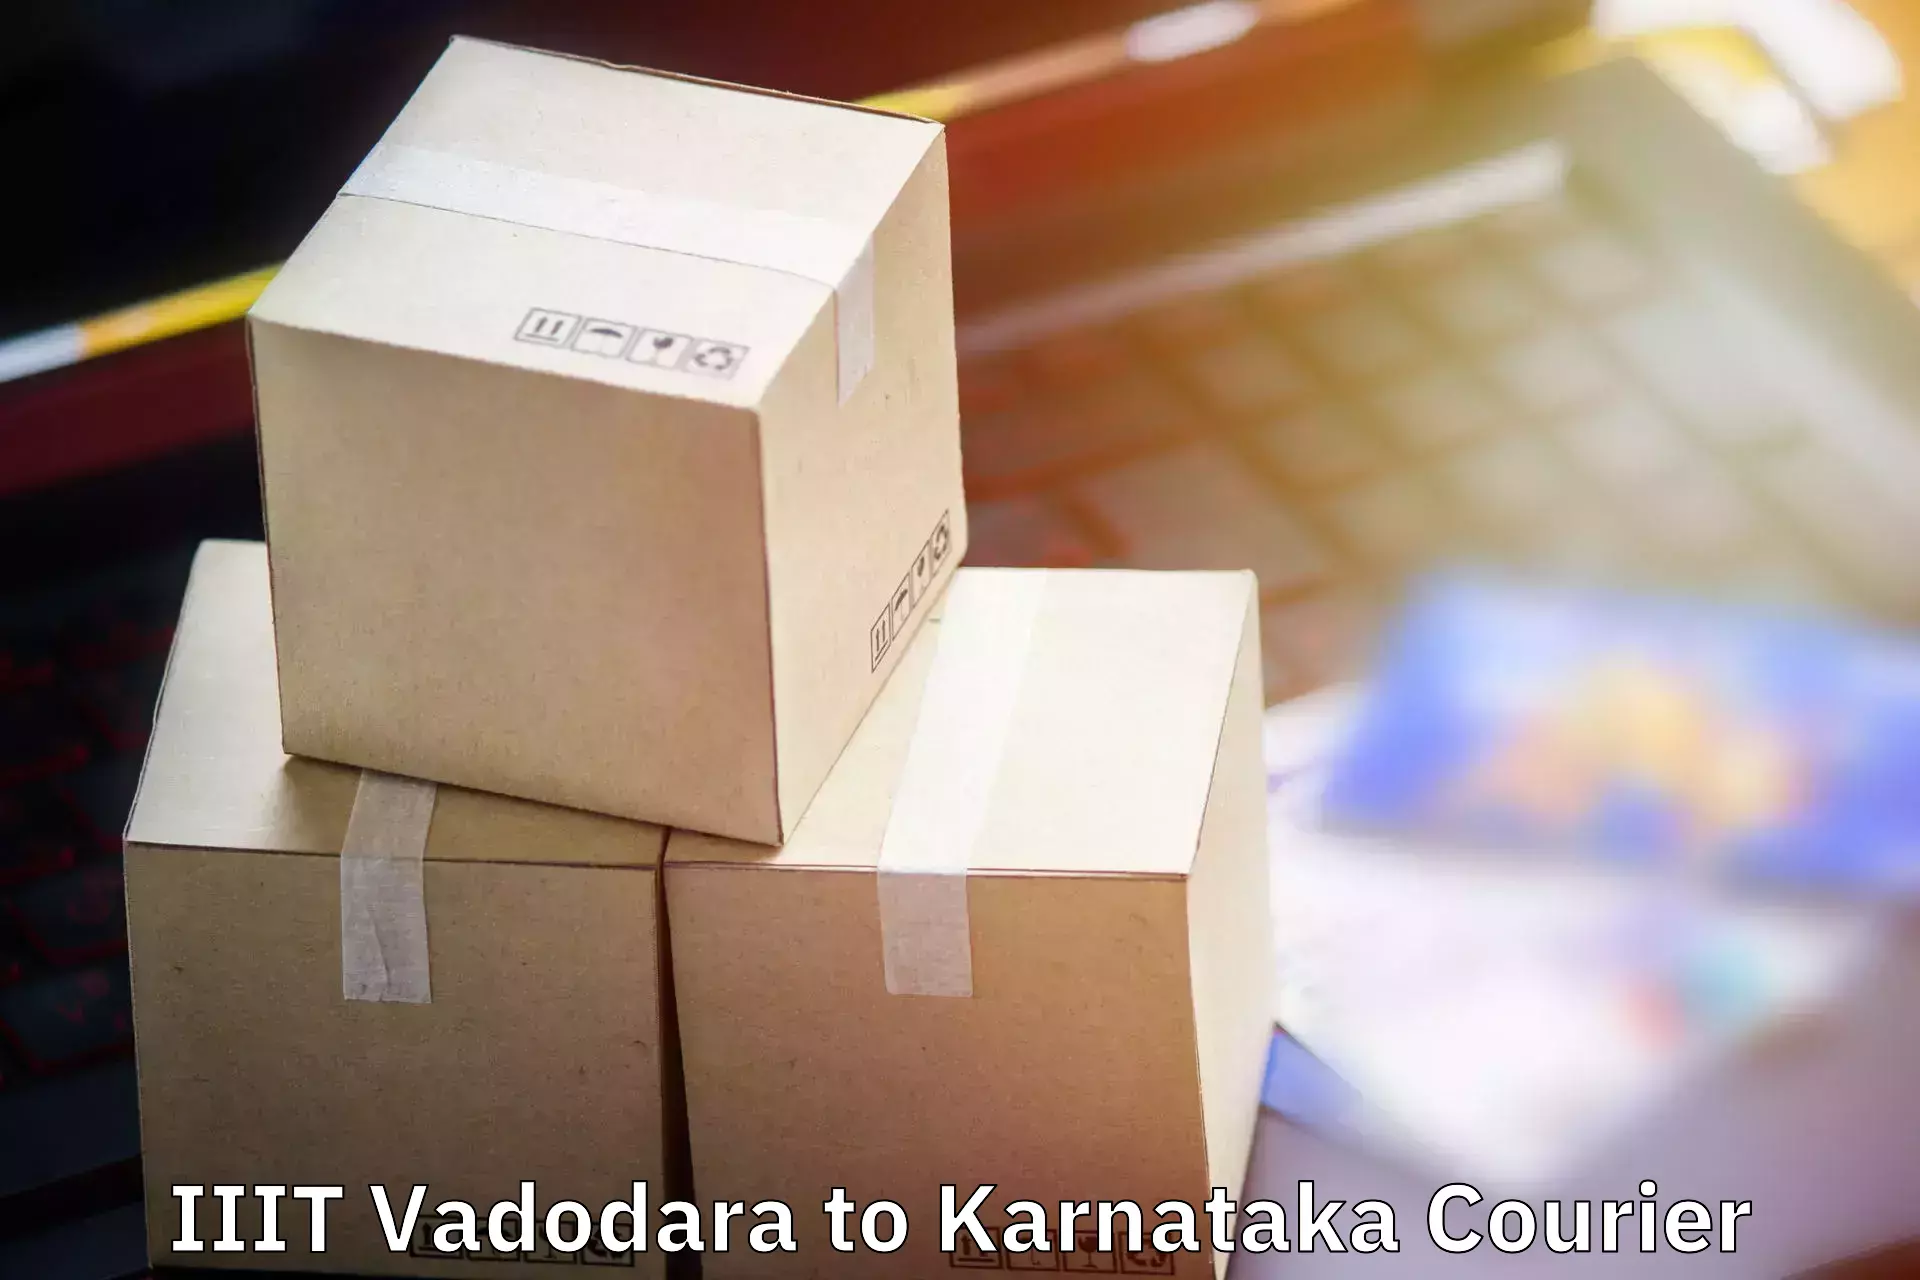 Baggage courier service IIIT Vadodara to Bengaluru